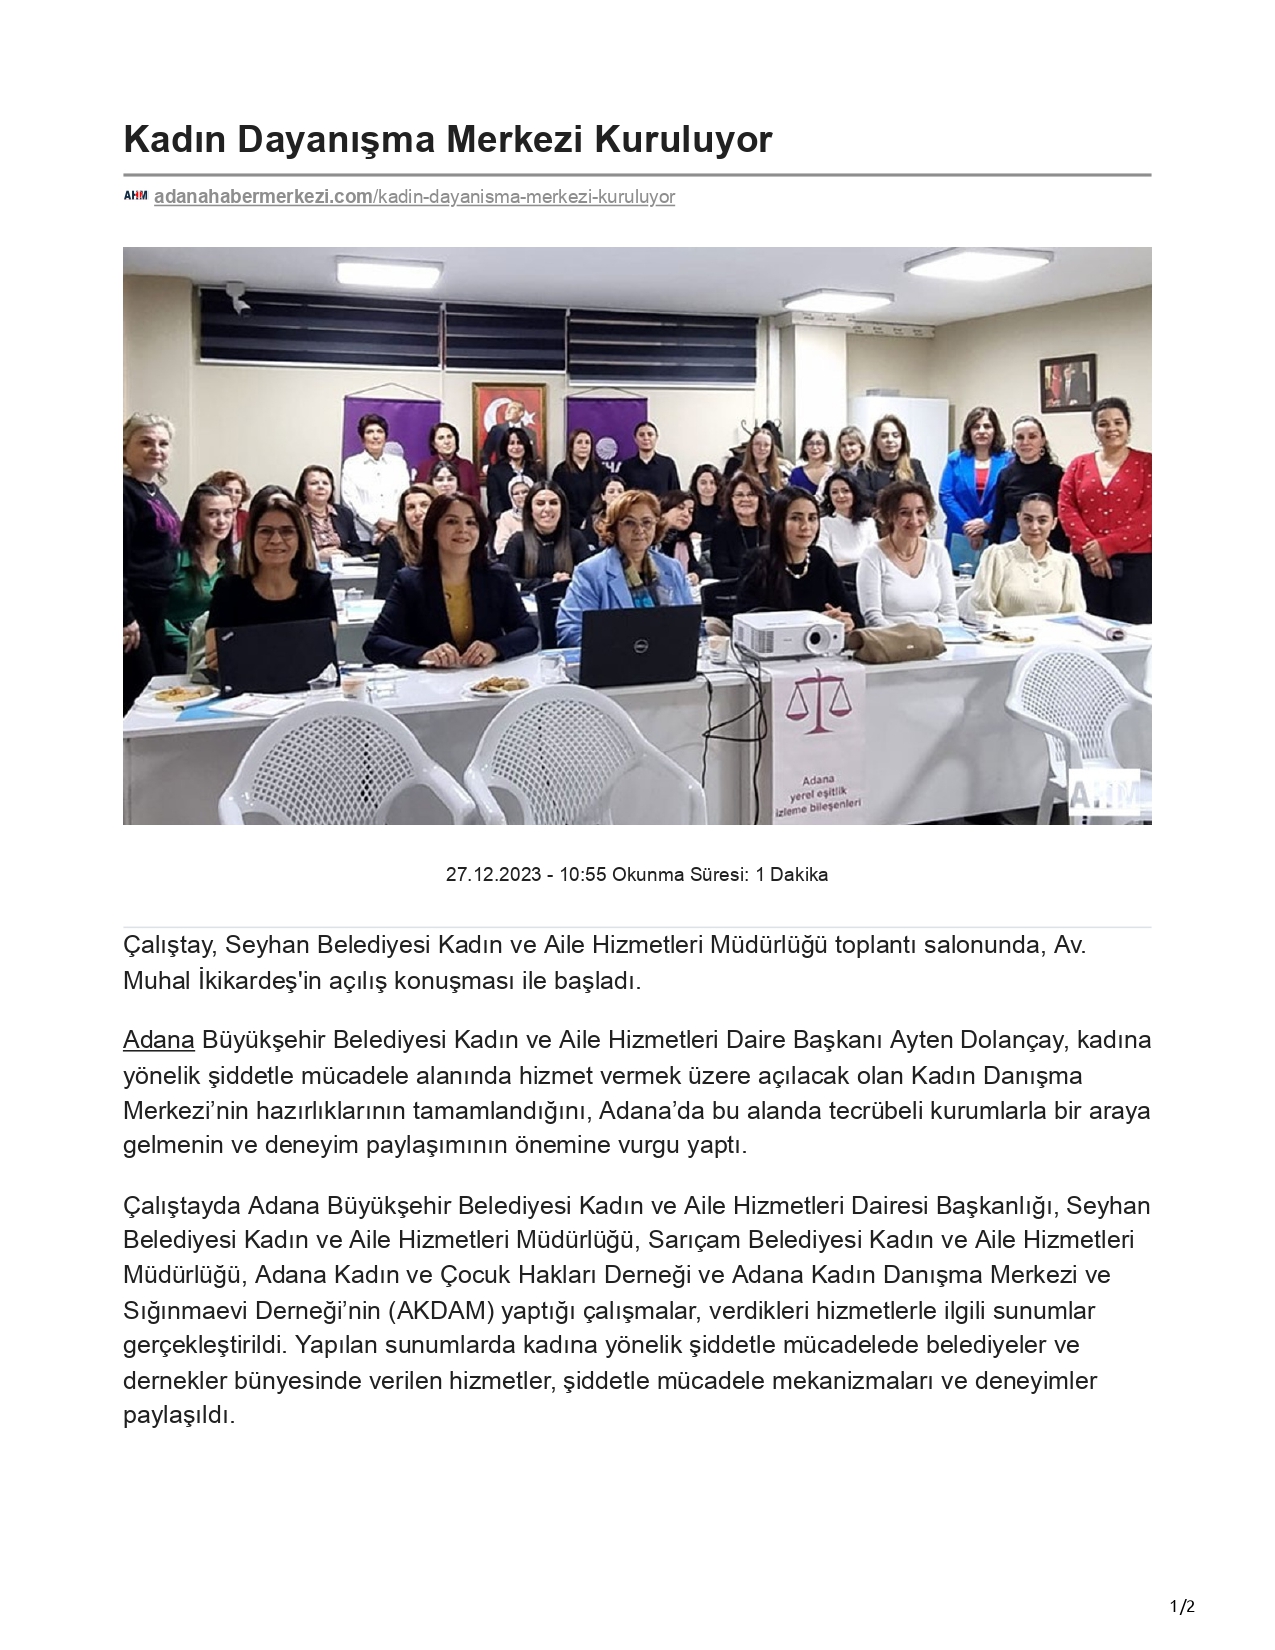 Adana Haber Merkezi: Kadın Dayanışma Merkezi Kuruluyor